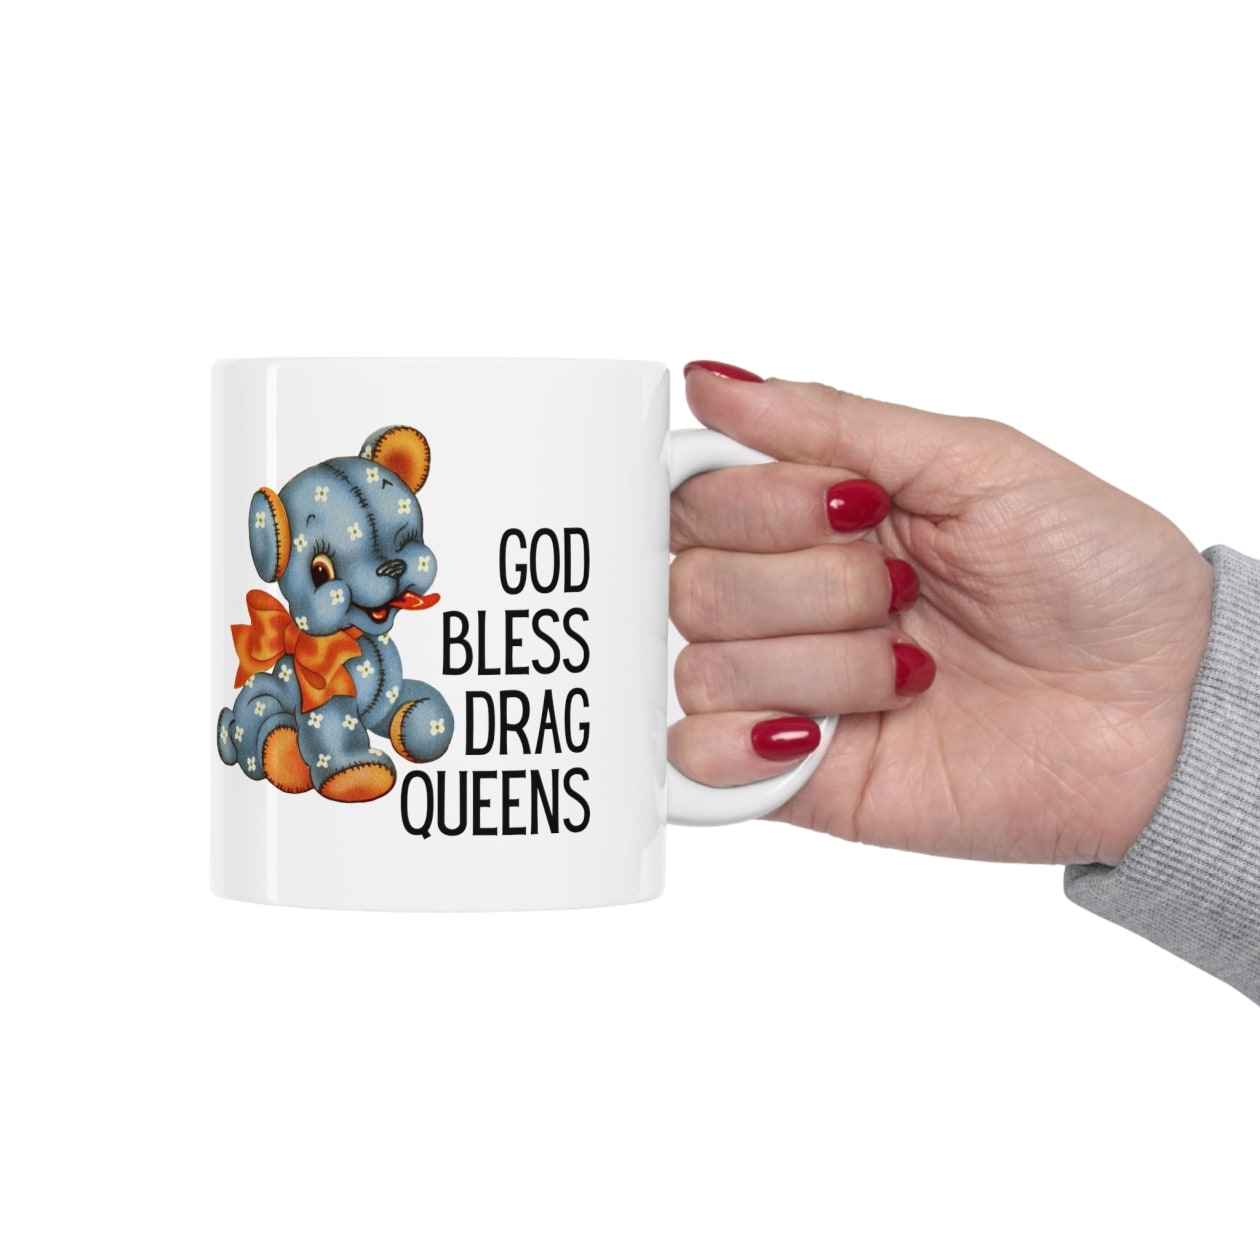 God Bless Drag Queens Ceramic Mug 11oz - Size: 11oz